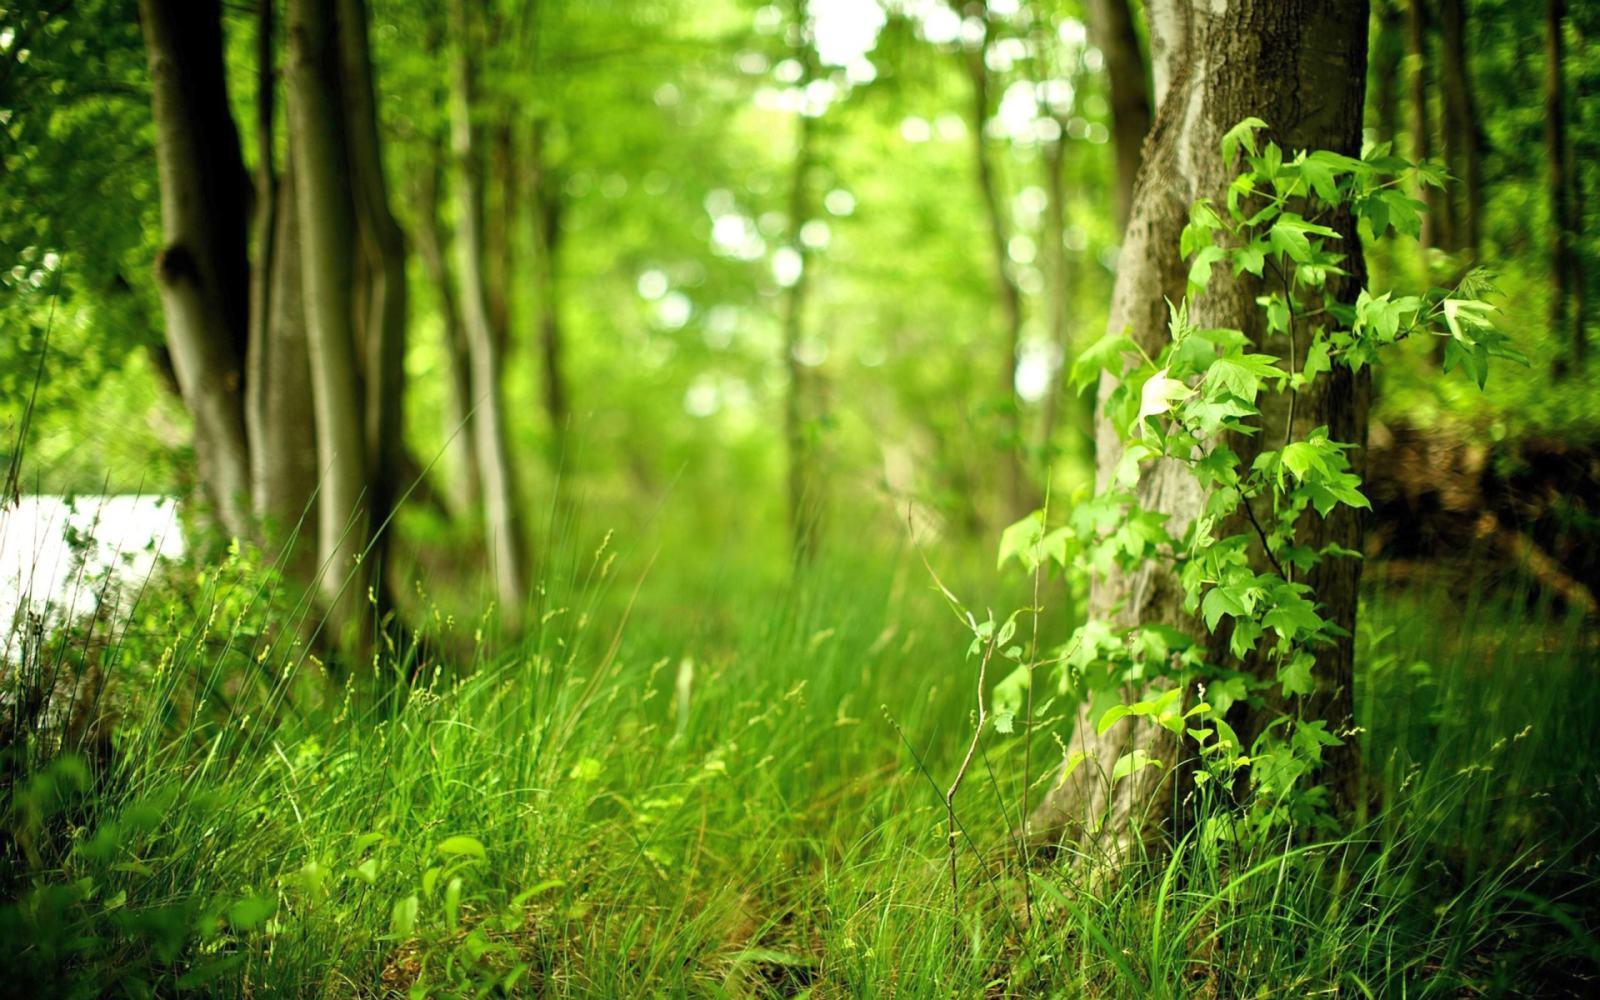 Green Forest: Khám phá và thưởng thức vẻ đẹp tuyệt đẹp của rừng xanh ngay trên màn hình điện thoại của bạn với hình nền Green Forest. Trải nghiệm bầu không khí trong lành, tĩnh lặng của thiên nhiên trong từng đường nét của hình ảnh thật độc đáo.